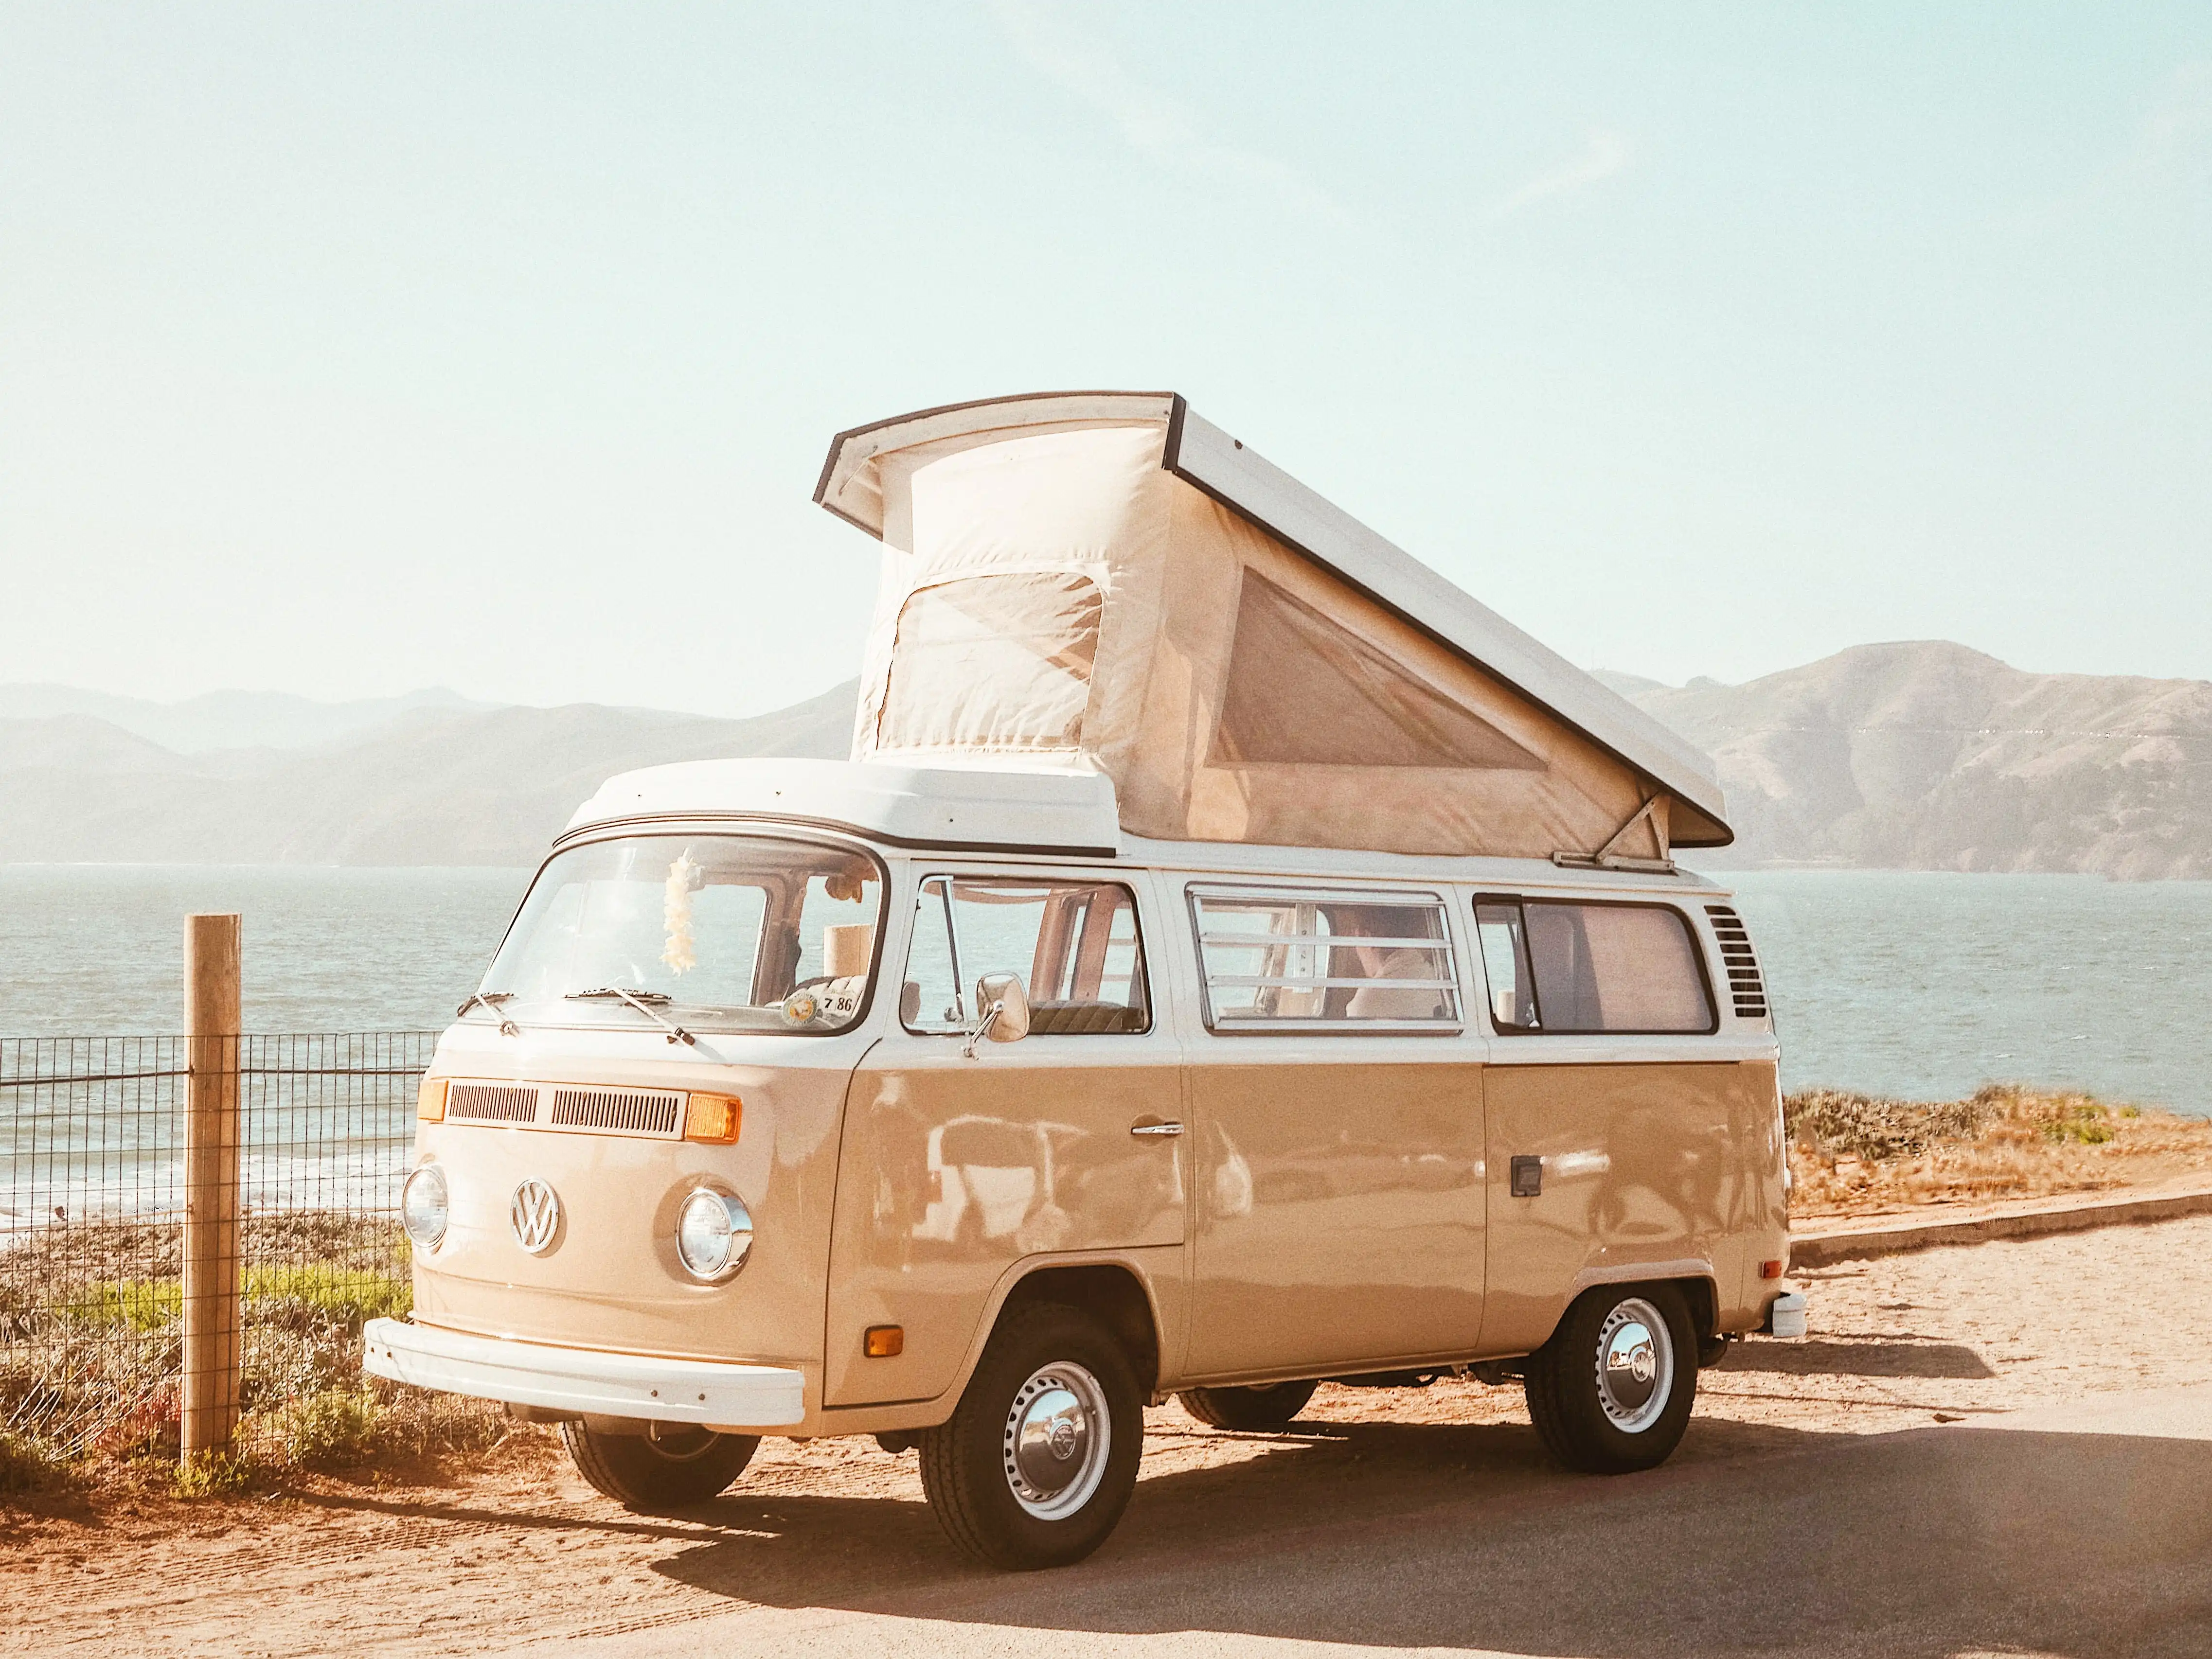 Les vans sont aussi une belle alternative aux traditionnels camping cars avec leur aménagement malin, leur encombrement réduit et leur style inimitable ! Mondial de l'Auto 2022